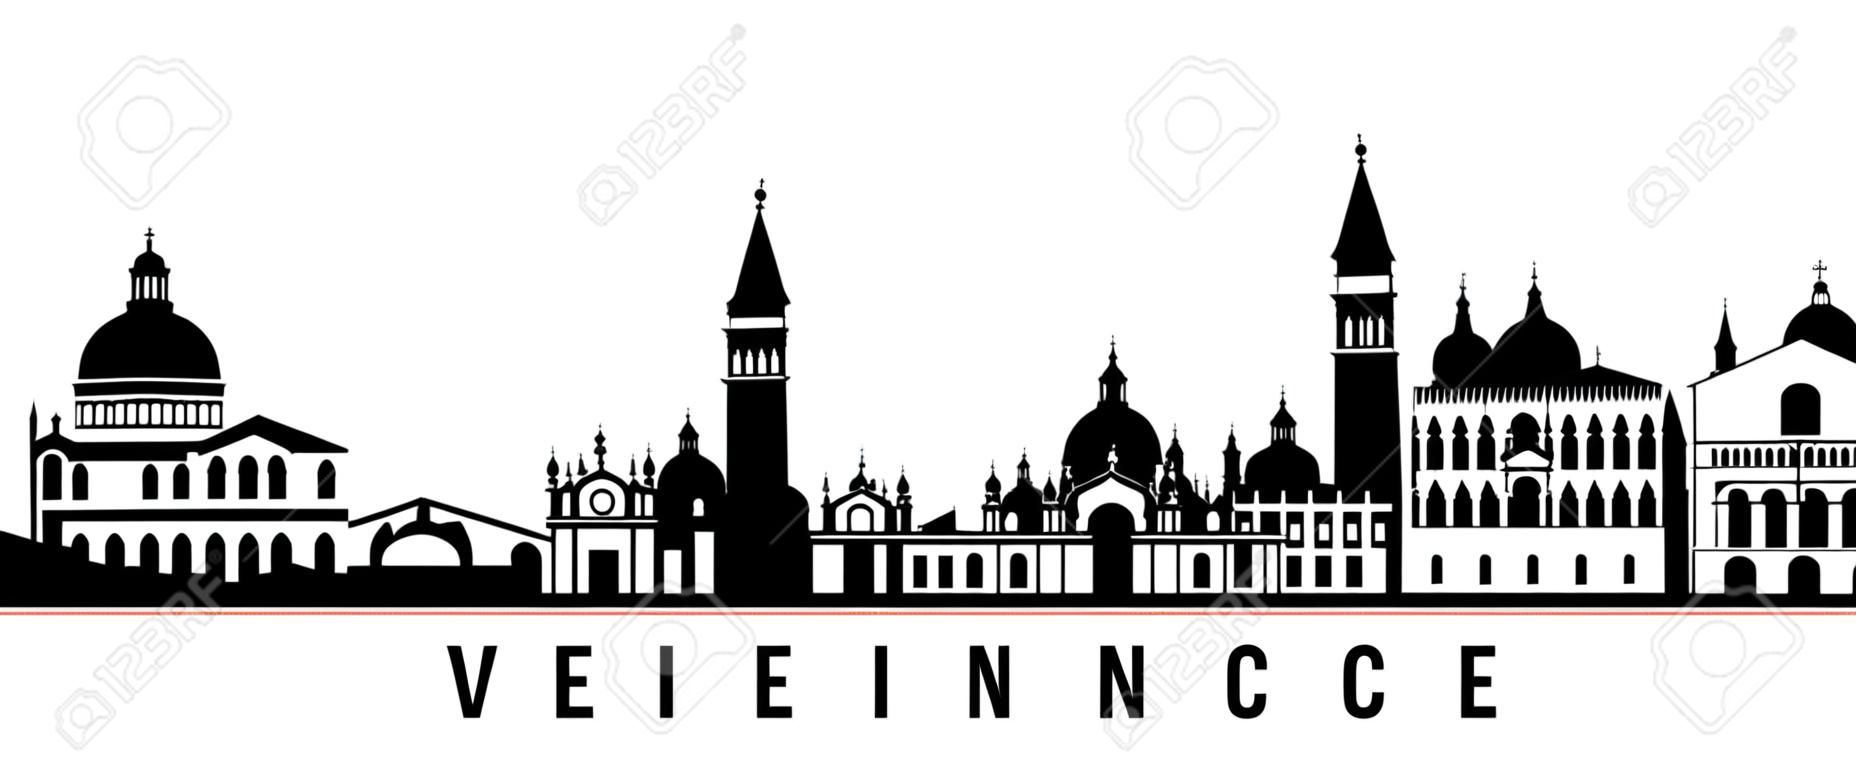 Baner poziomy panoramę Wenecji. czarno-biała sylwetka Wenecji, Włochy. szablon wektora dla twojego projektu.